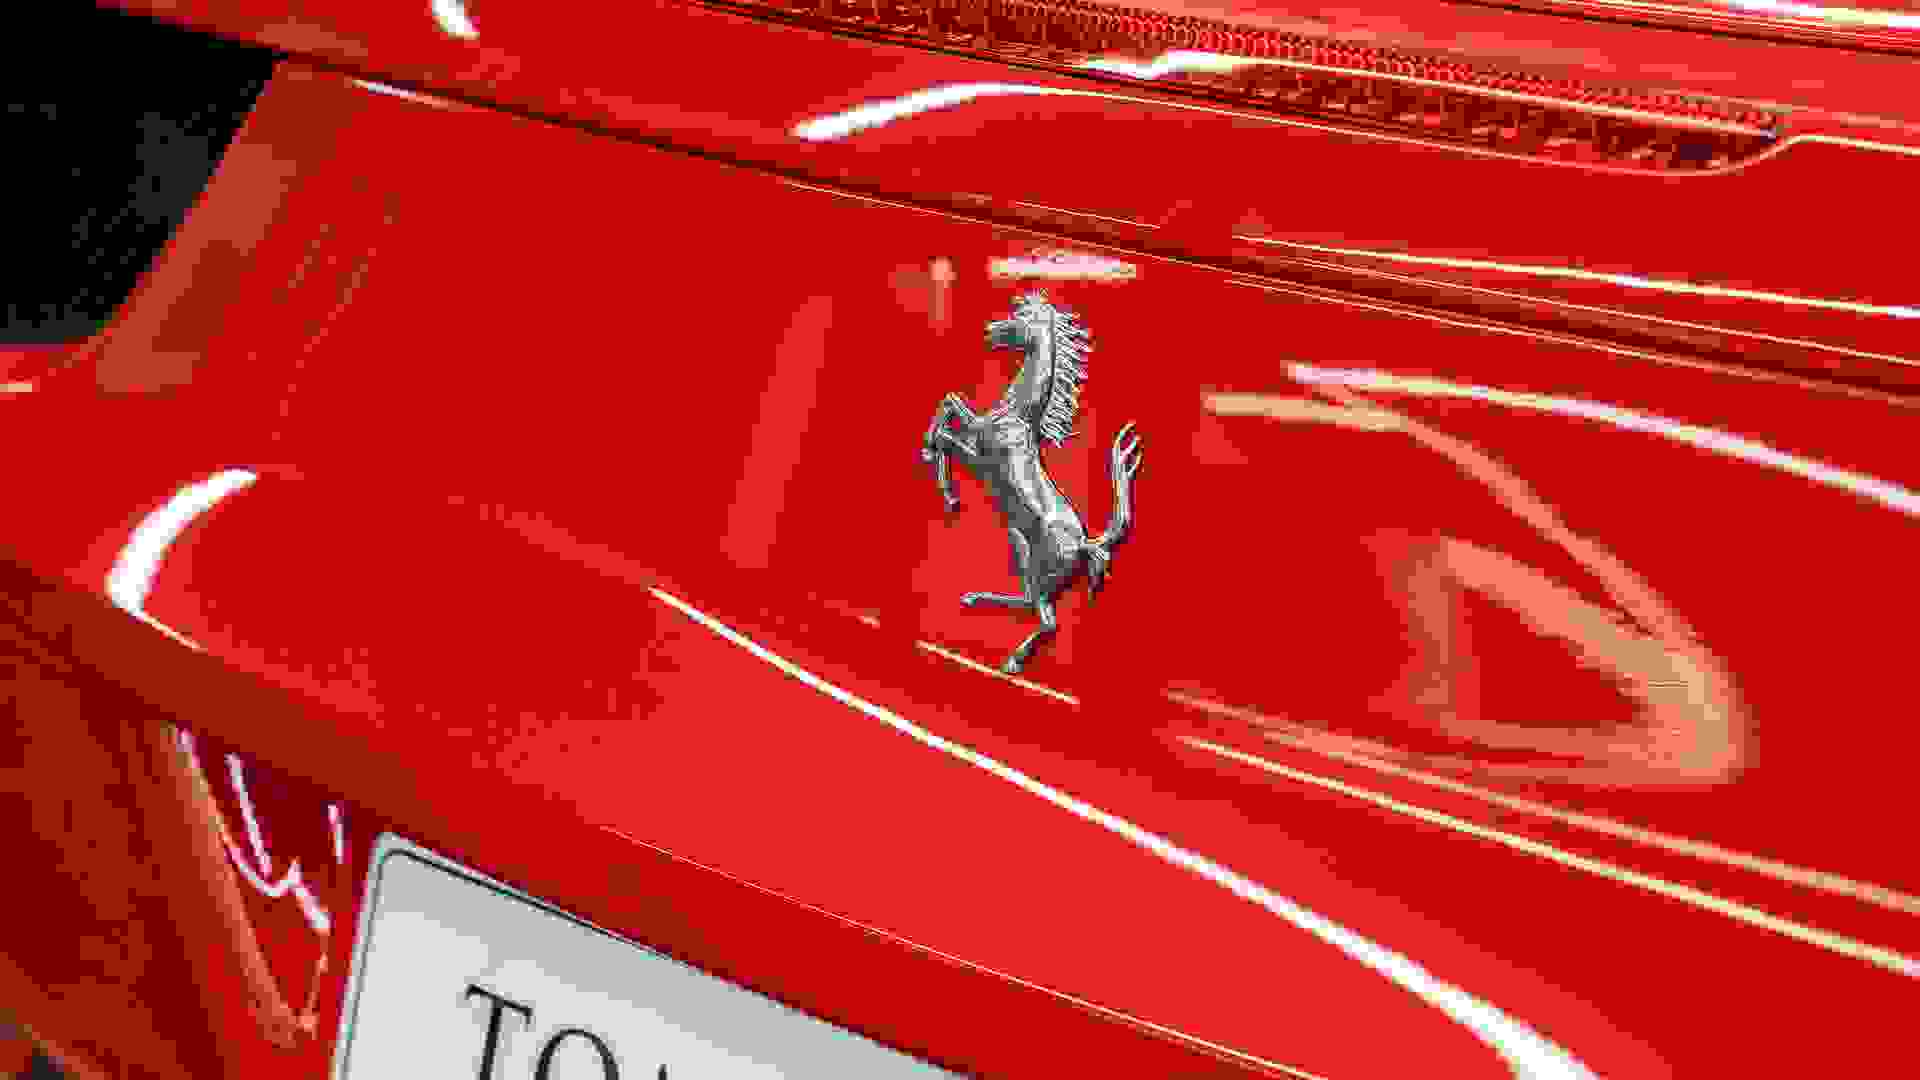 Ferrari 458 Photo 46ef38c4-be23-4fa0-af3b-4fdbf15cb7f6.jpg